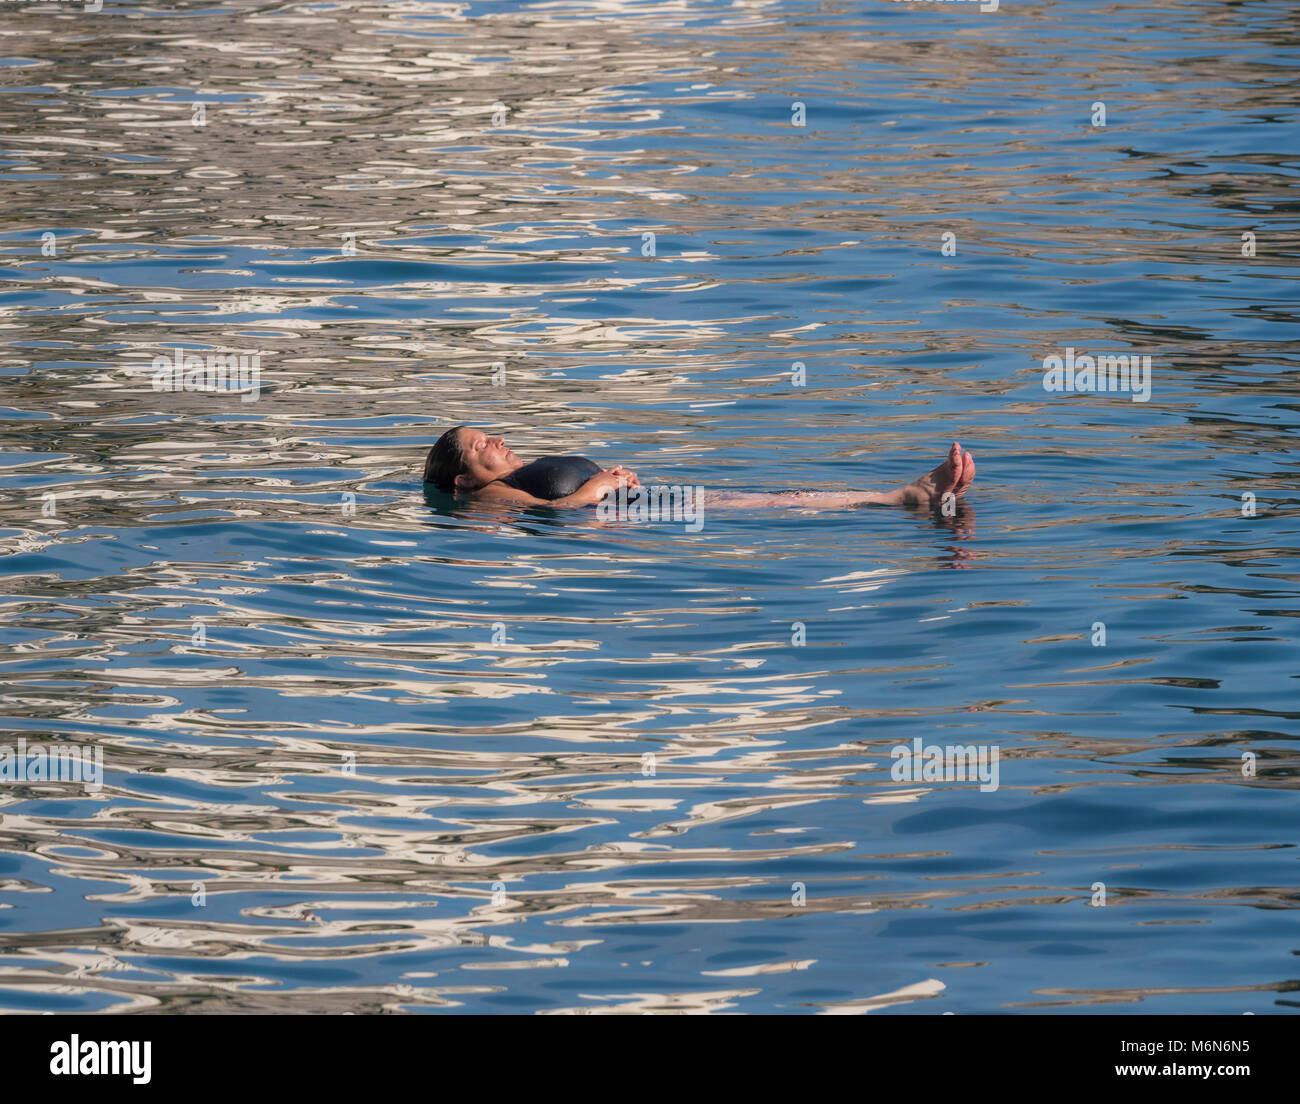 Donna caucasica che galleggia sulla schiena nel mar Tirreno, con gli occhi chiusi, rilassandosi in una calda giornata di sole. Foto Stock